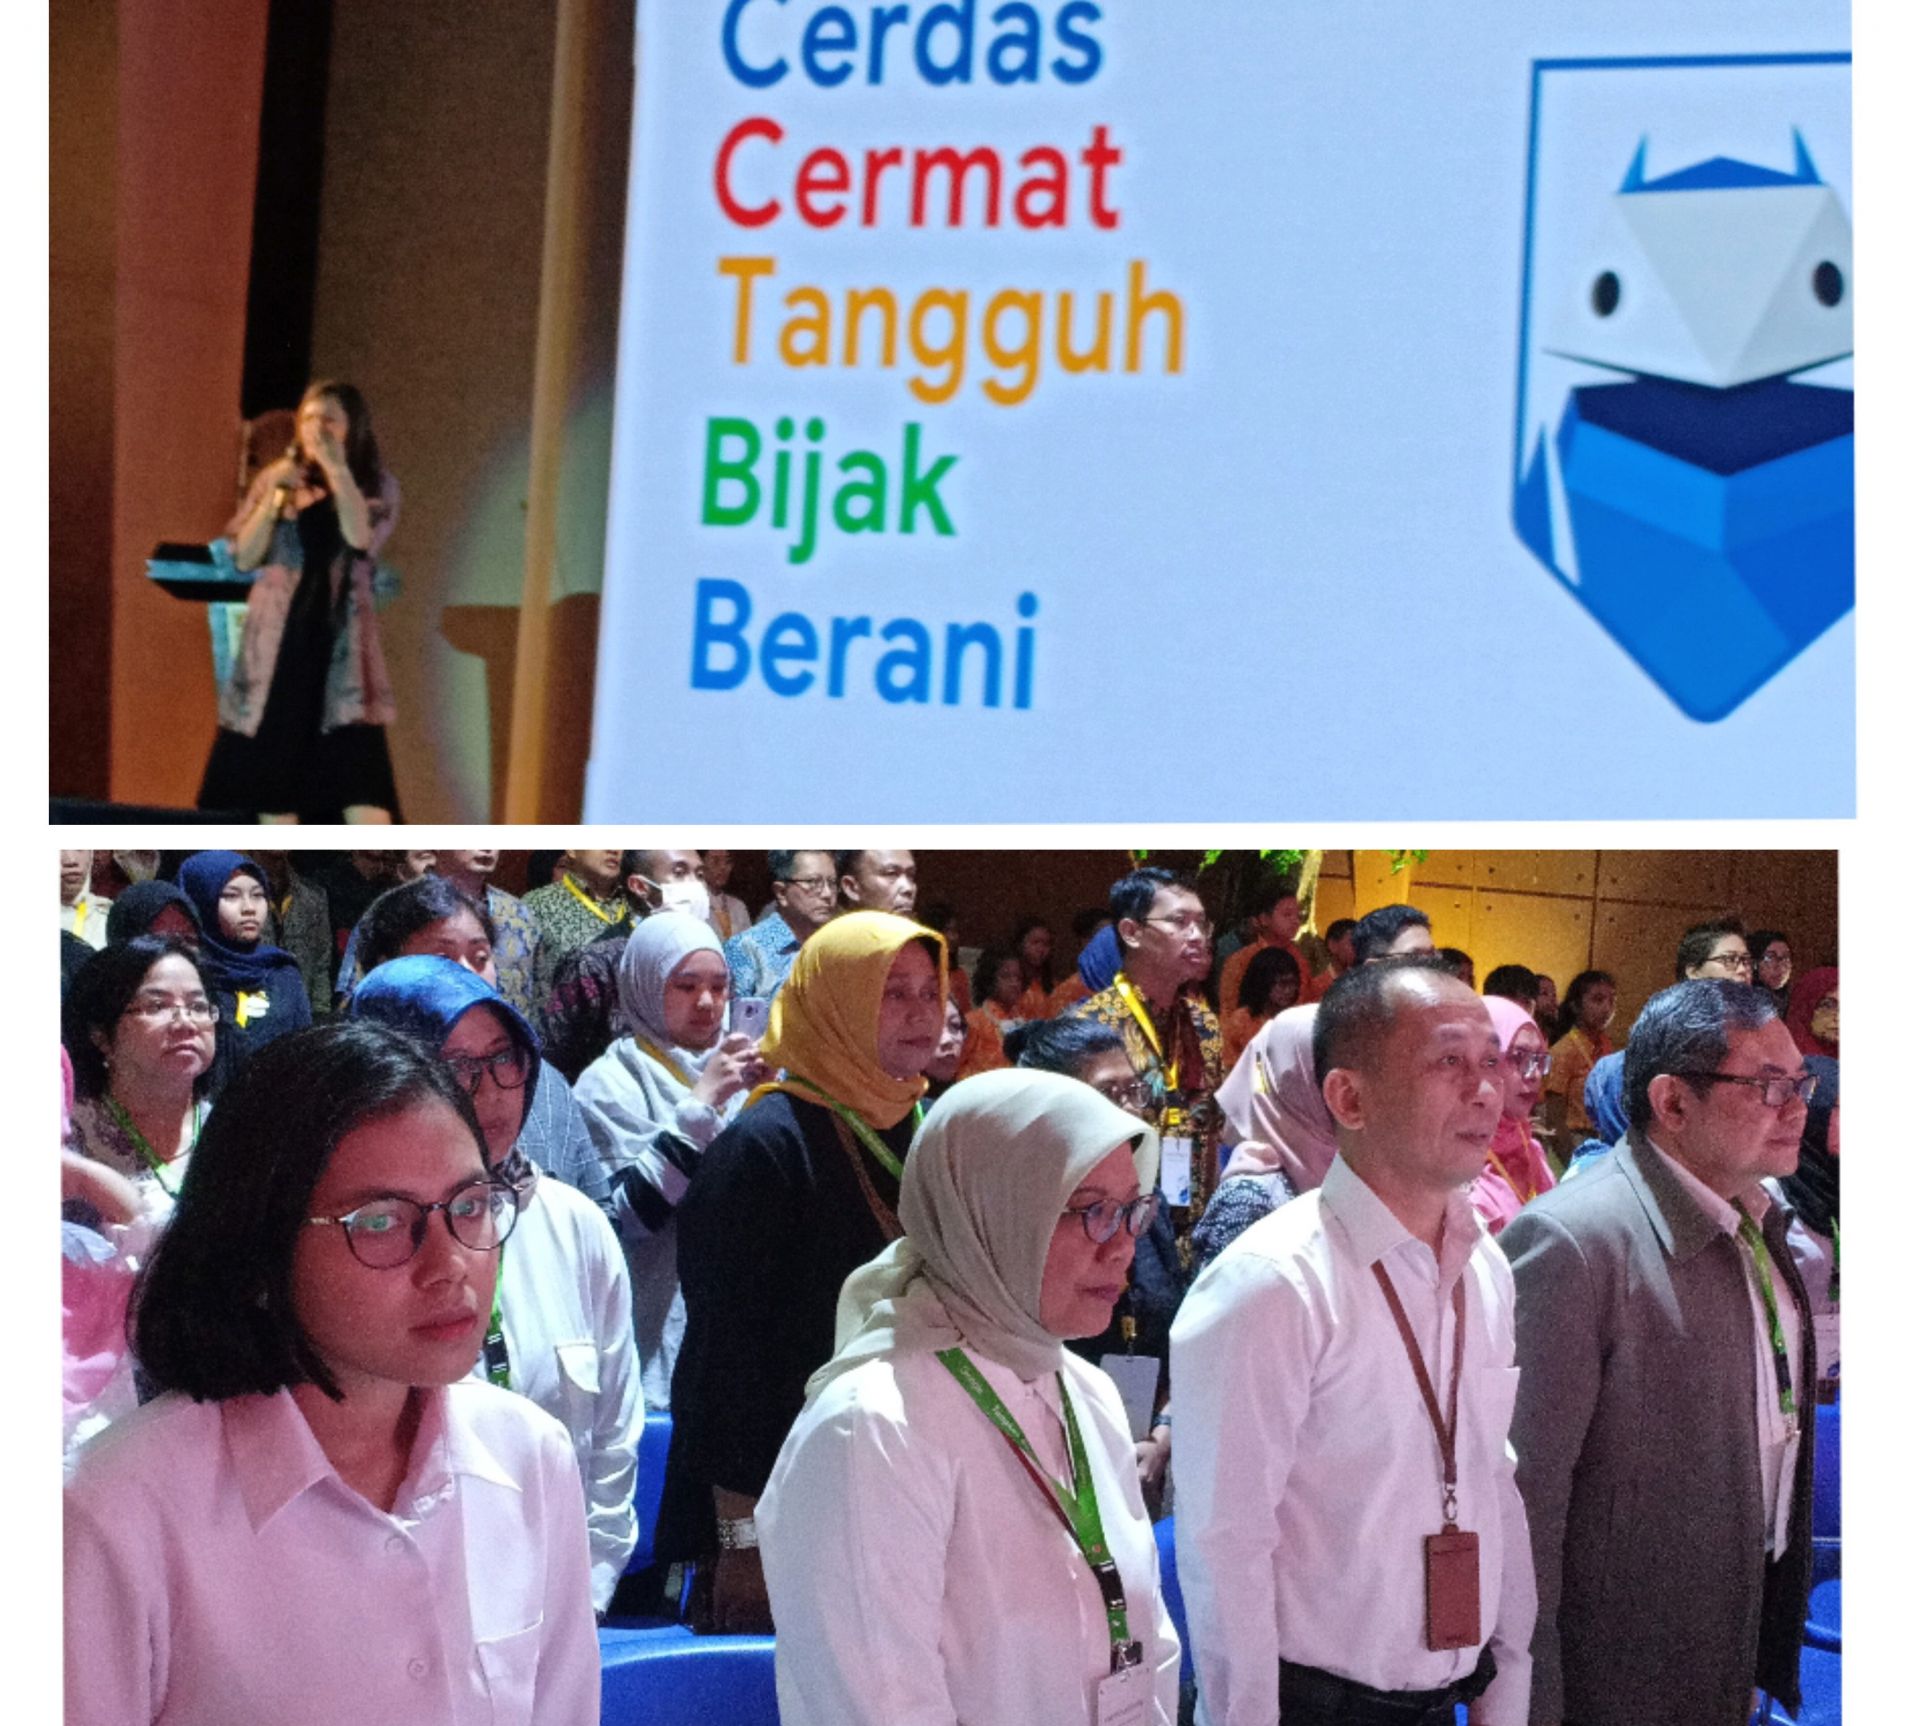 Google Indonesia Rangkul 3 Kementerian; Ajak Internet Sehat Untuk Anak Indonesia